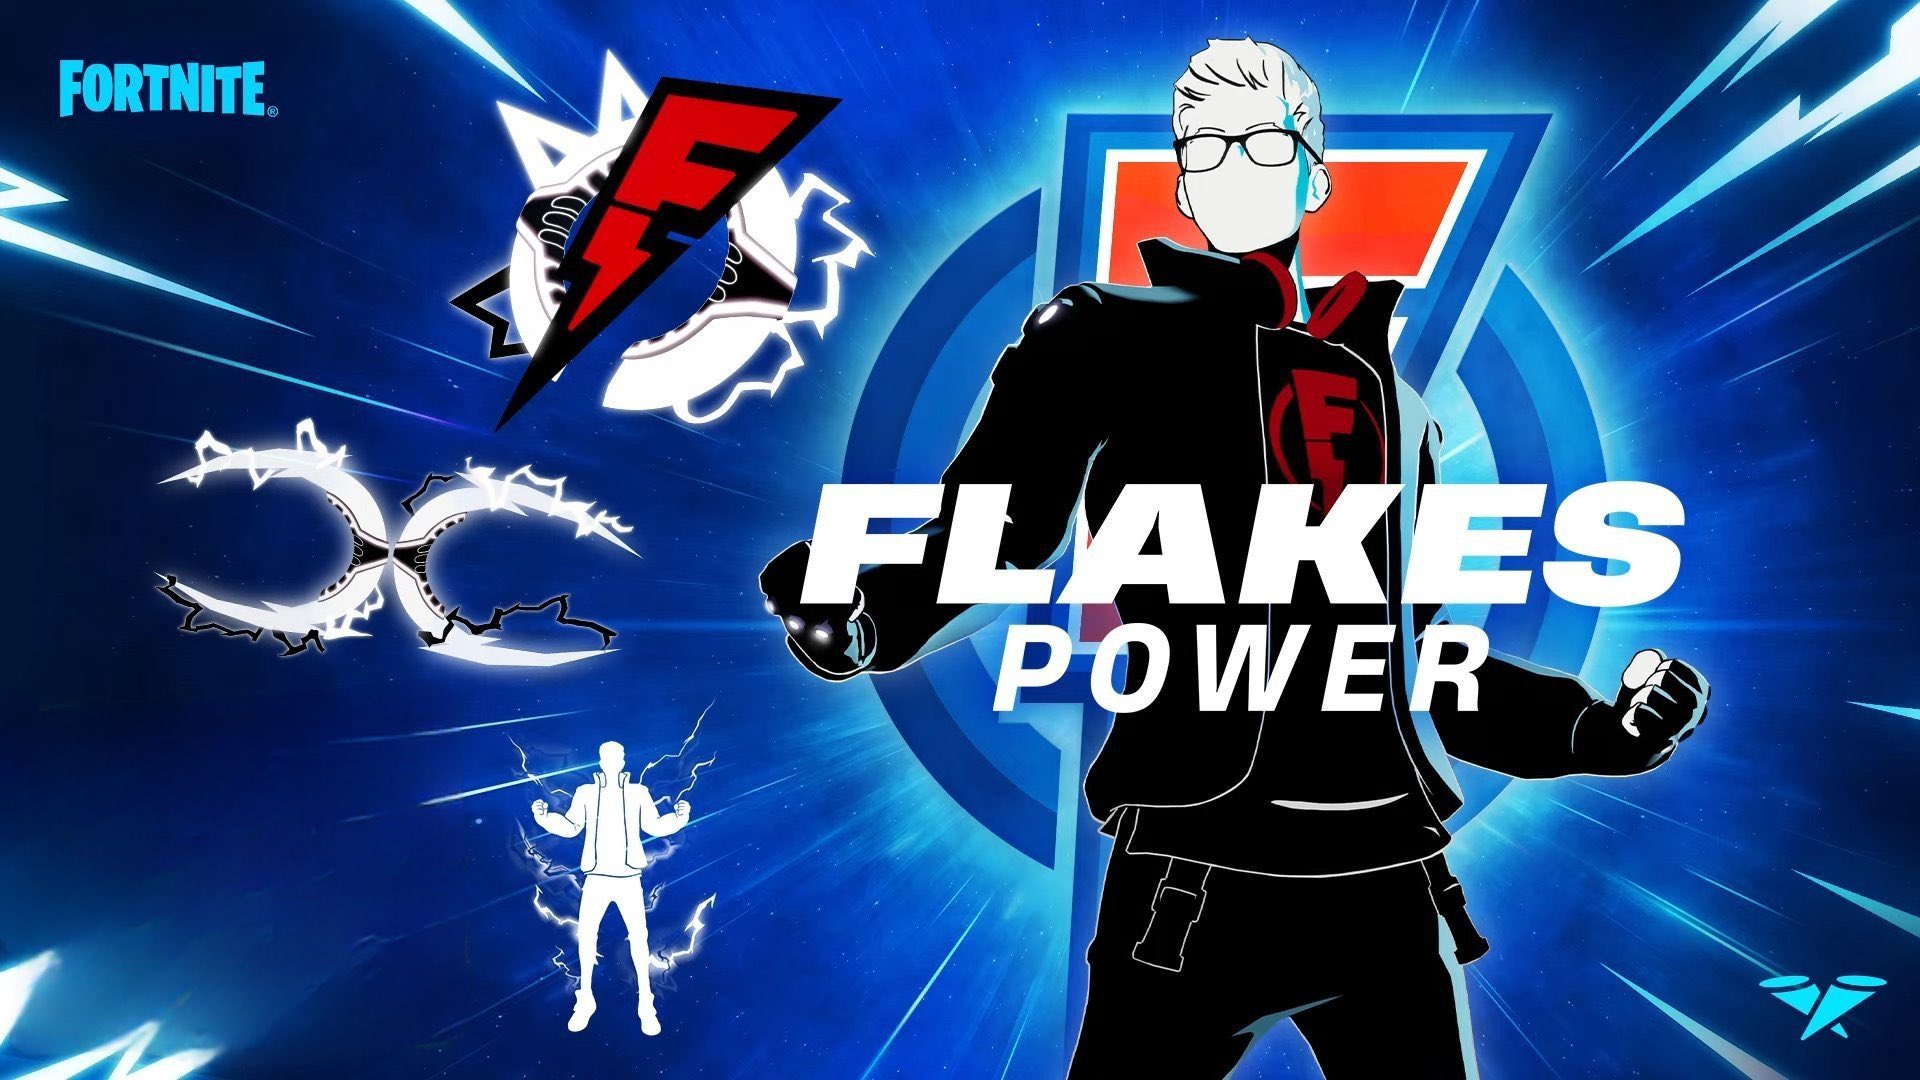 Flakes Power Fortnite wallpaper